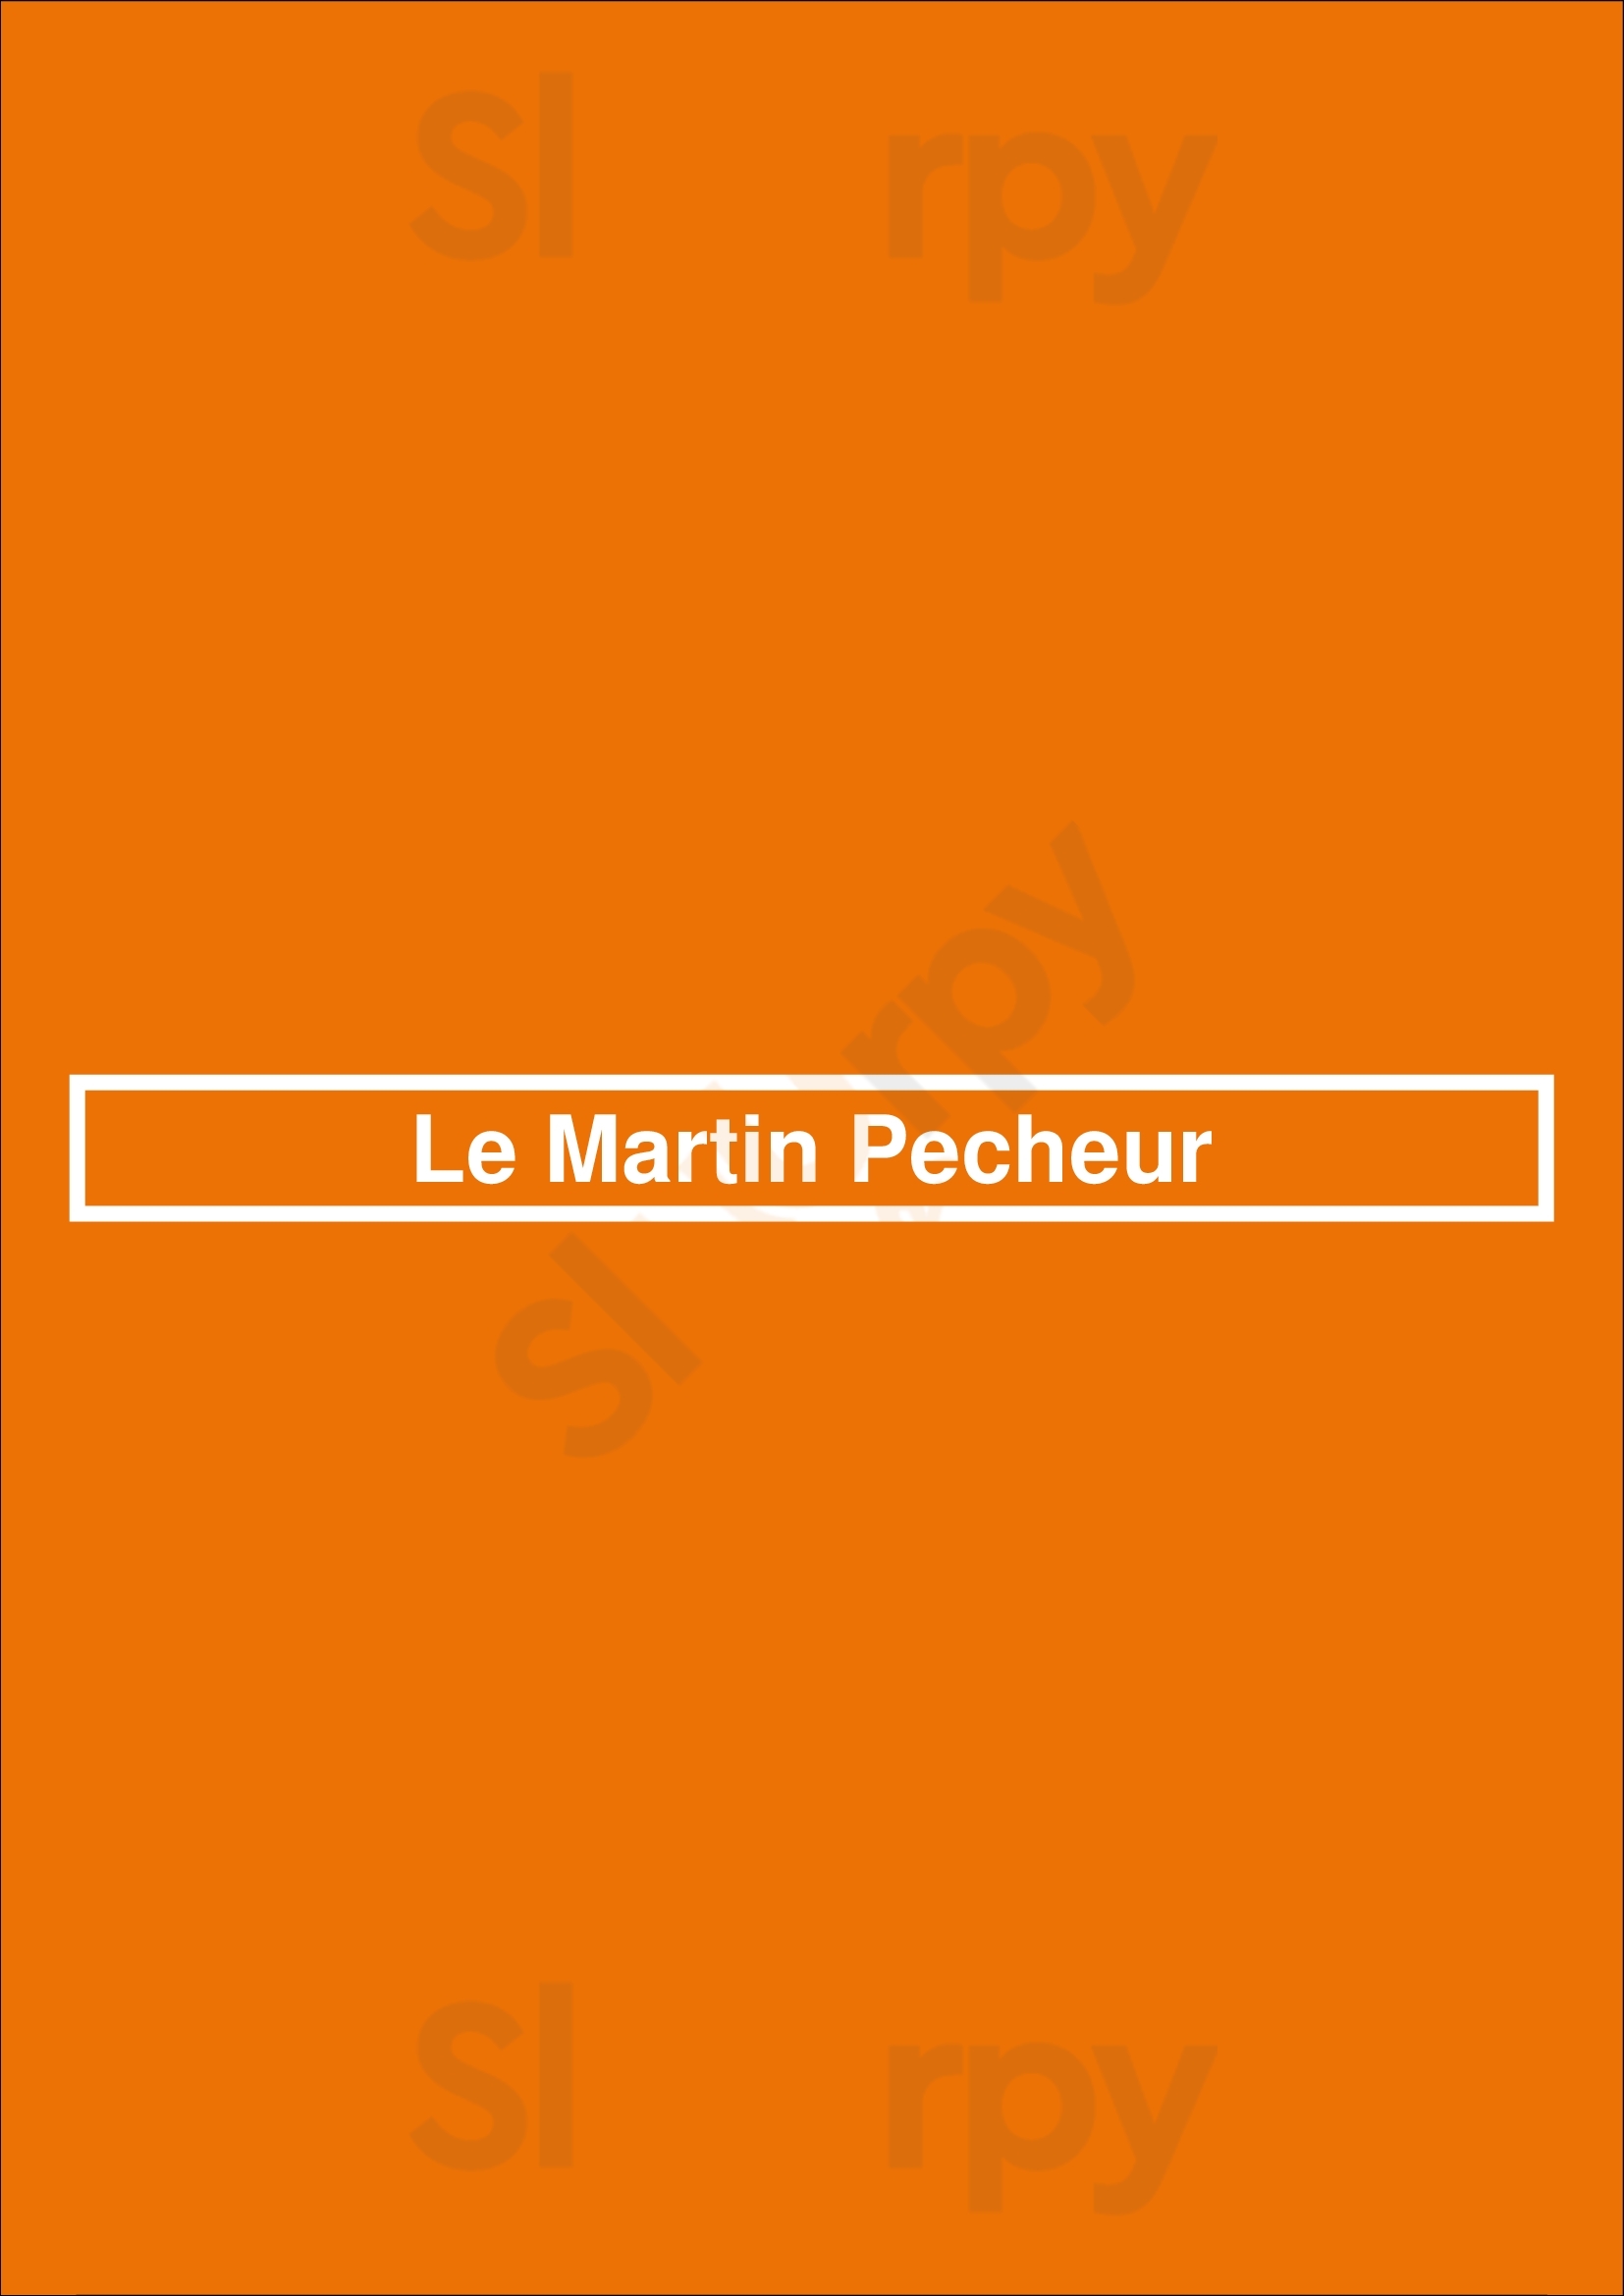 Le Martin Pecheur Bruxelles Menu - 1